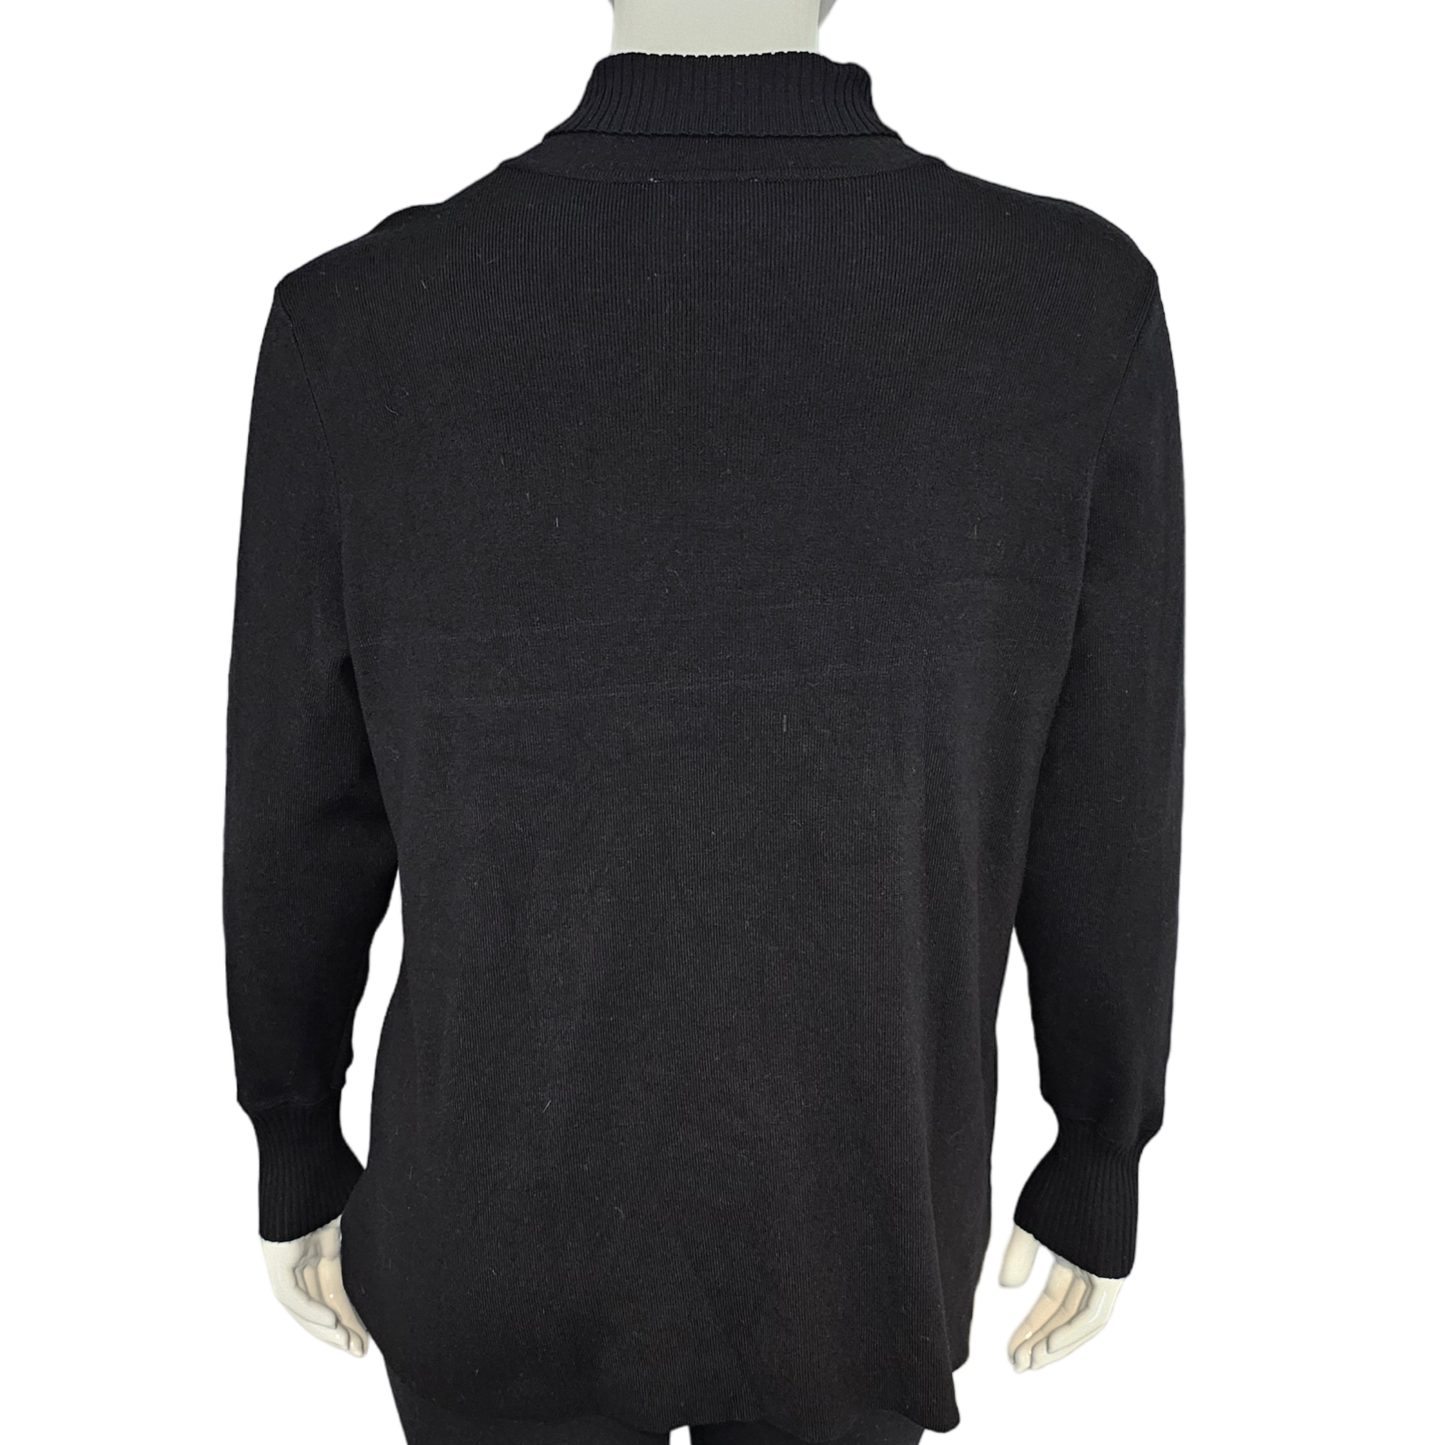 Sweater By louis dellolio Size: 2x